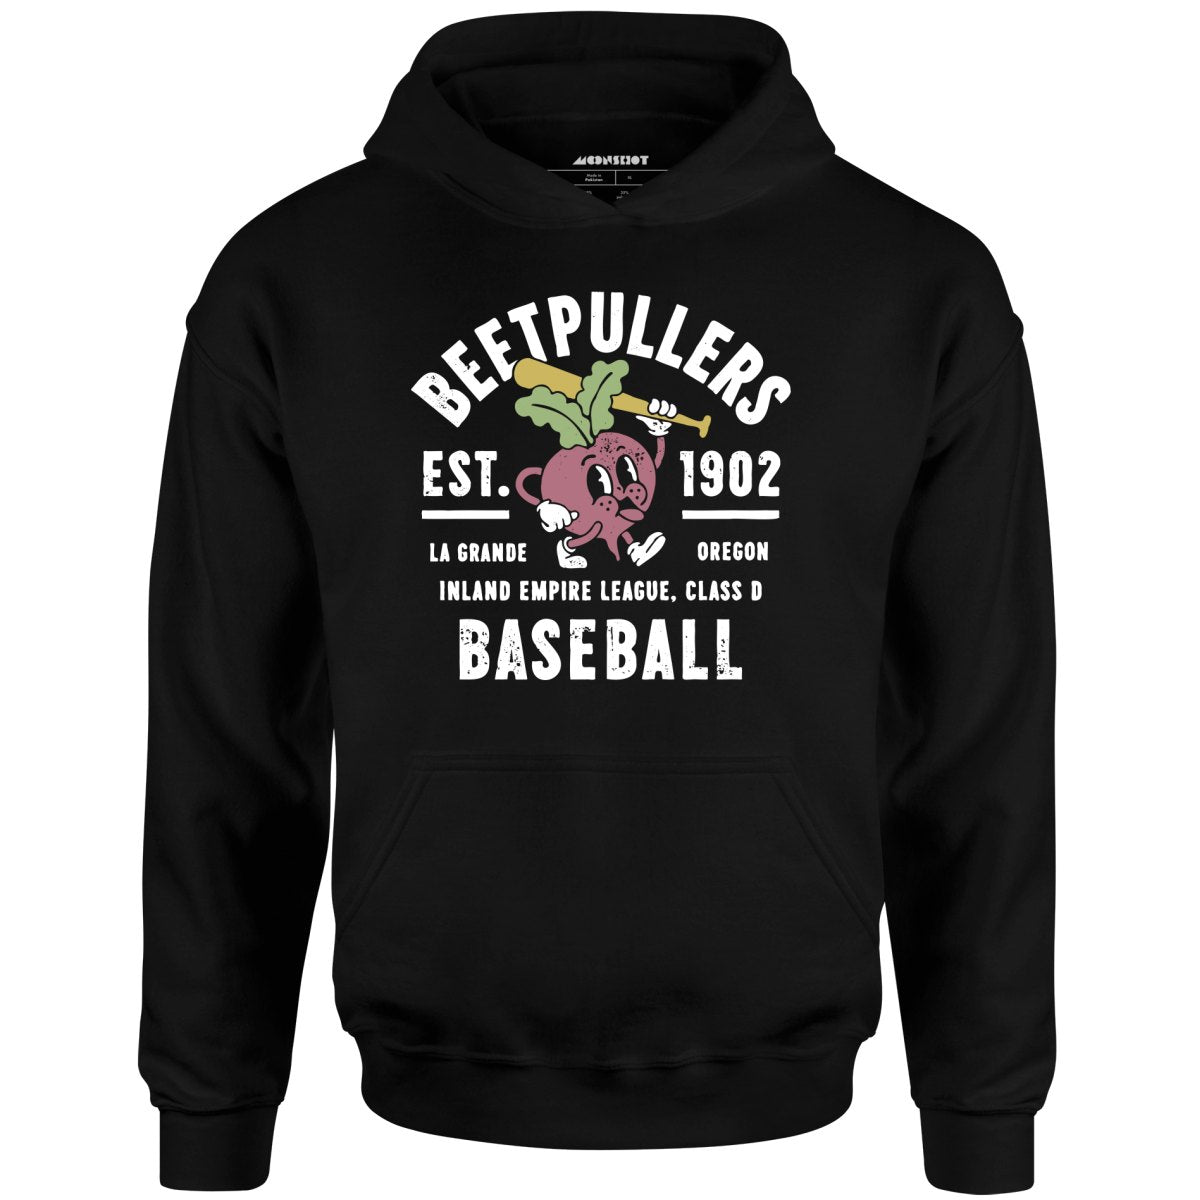 La Grande Beetpullers - Oregon - Vintage Defunct Baseball Teams - Unisex Hoodie